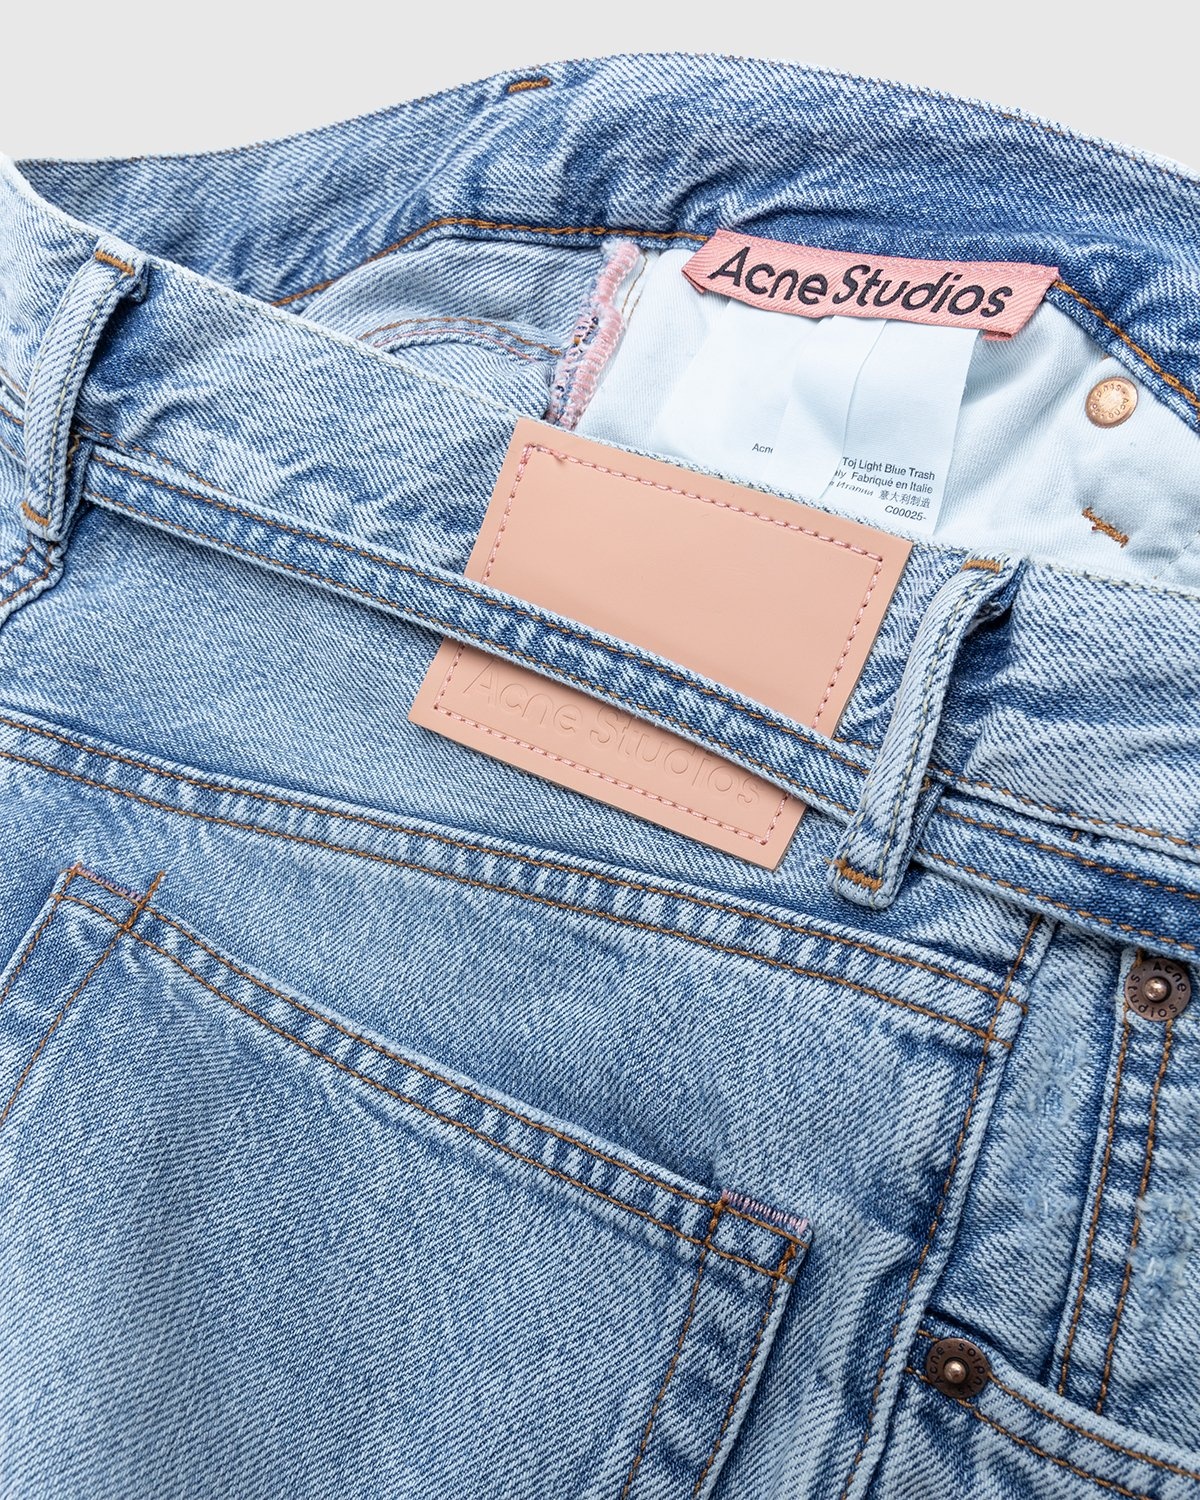 Acne Studios – Loose Jeans Blue | Shop